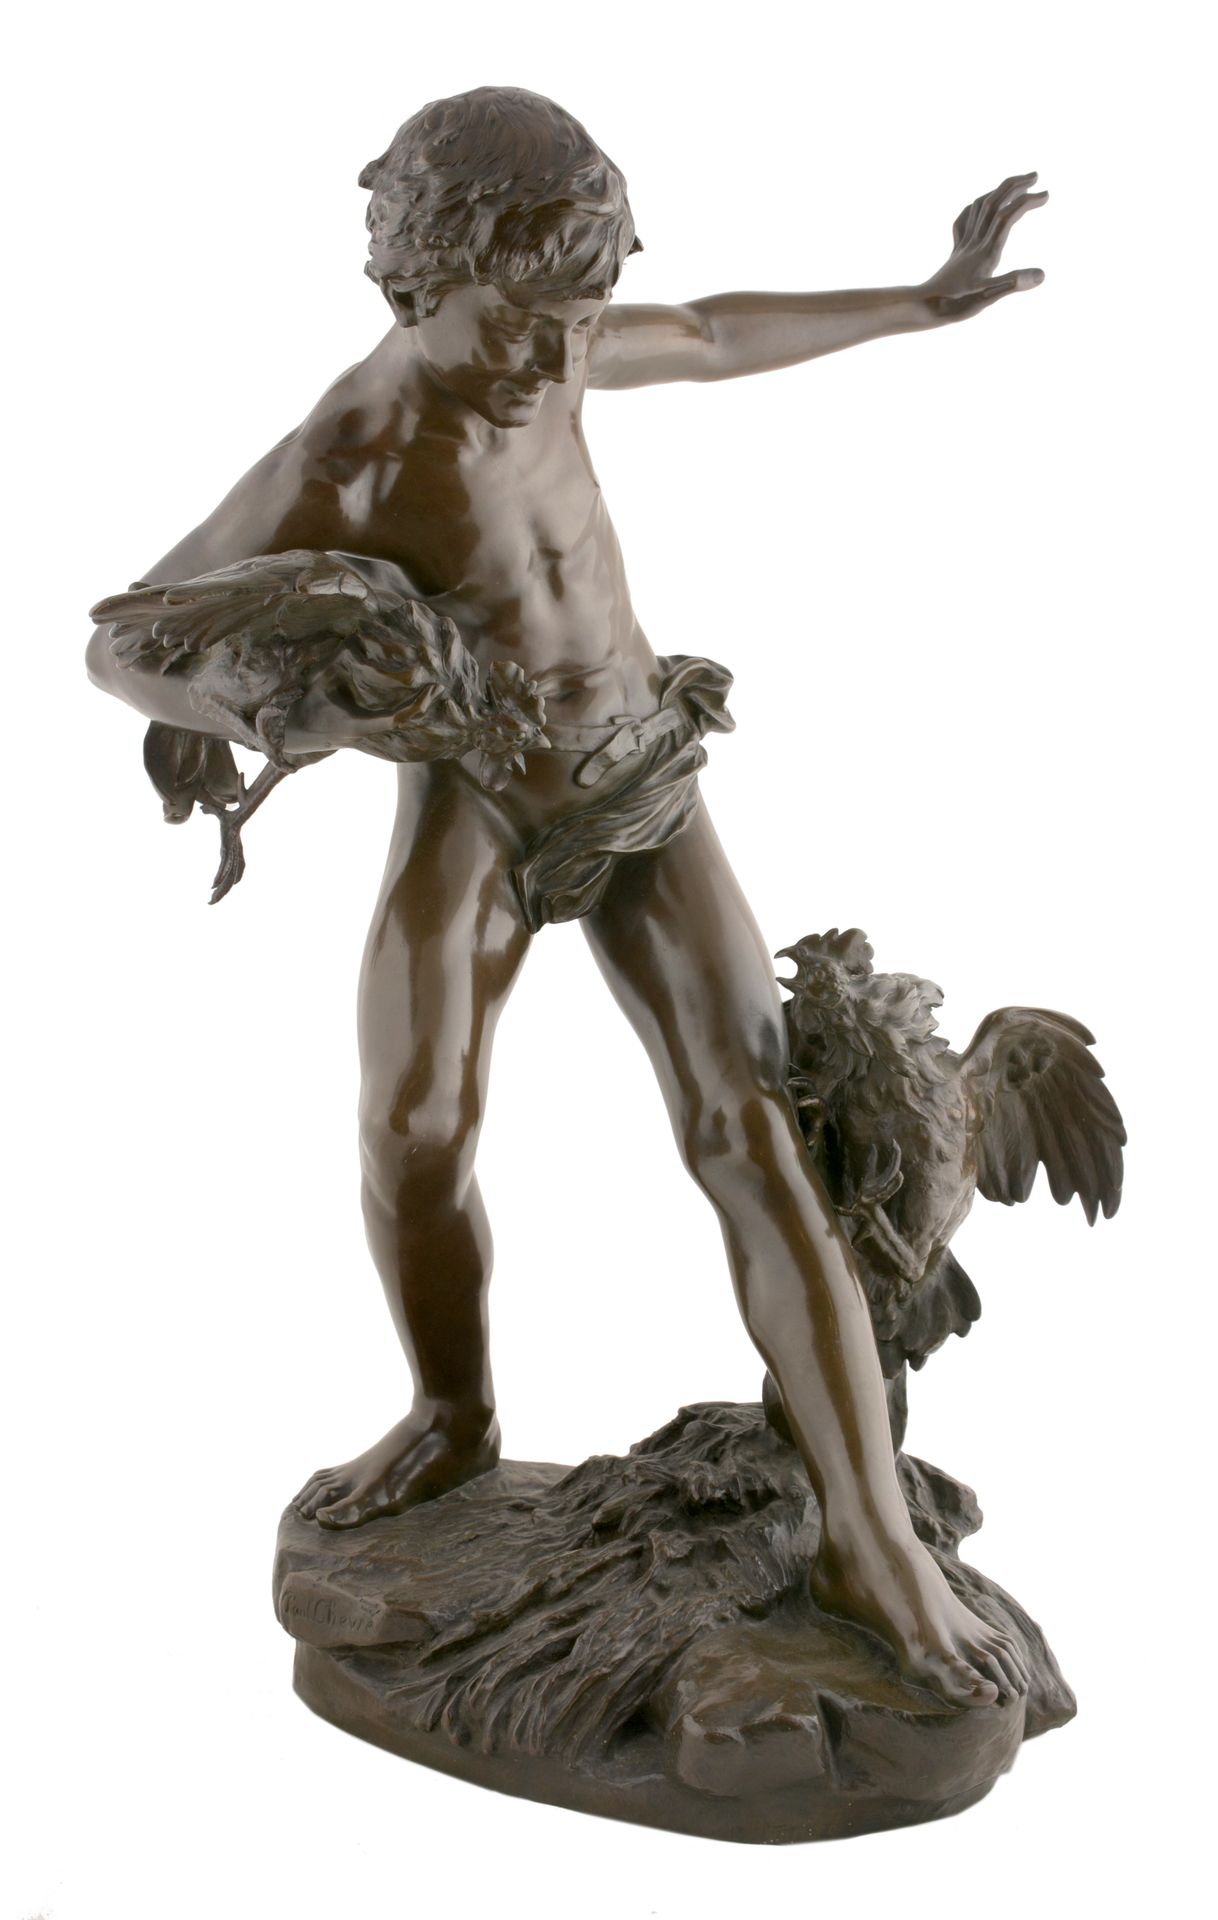 CHEVRE, Paul - Romain (1867-1914) Combattimento di galli







Scultura in bron&hellip;